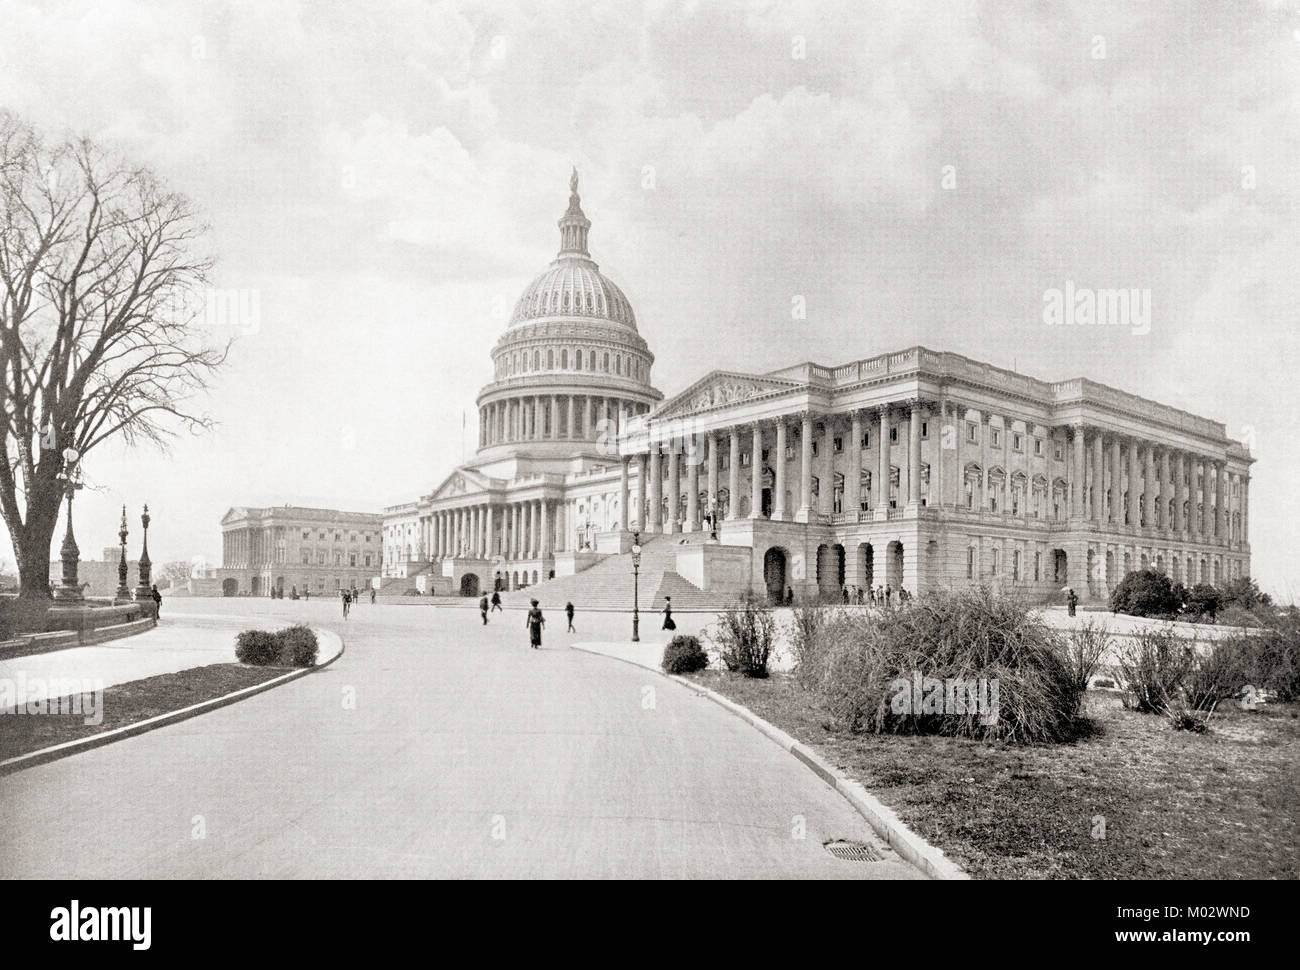 Der United States Capitol, aka Capitol Building, Washington D.C., Vereinigte Staaten von Amerika, hier gesehen c 1911. Von den Wundern der Welt, veröffentlicht C 1911. Stockfoto